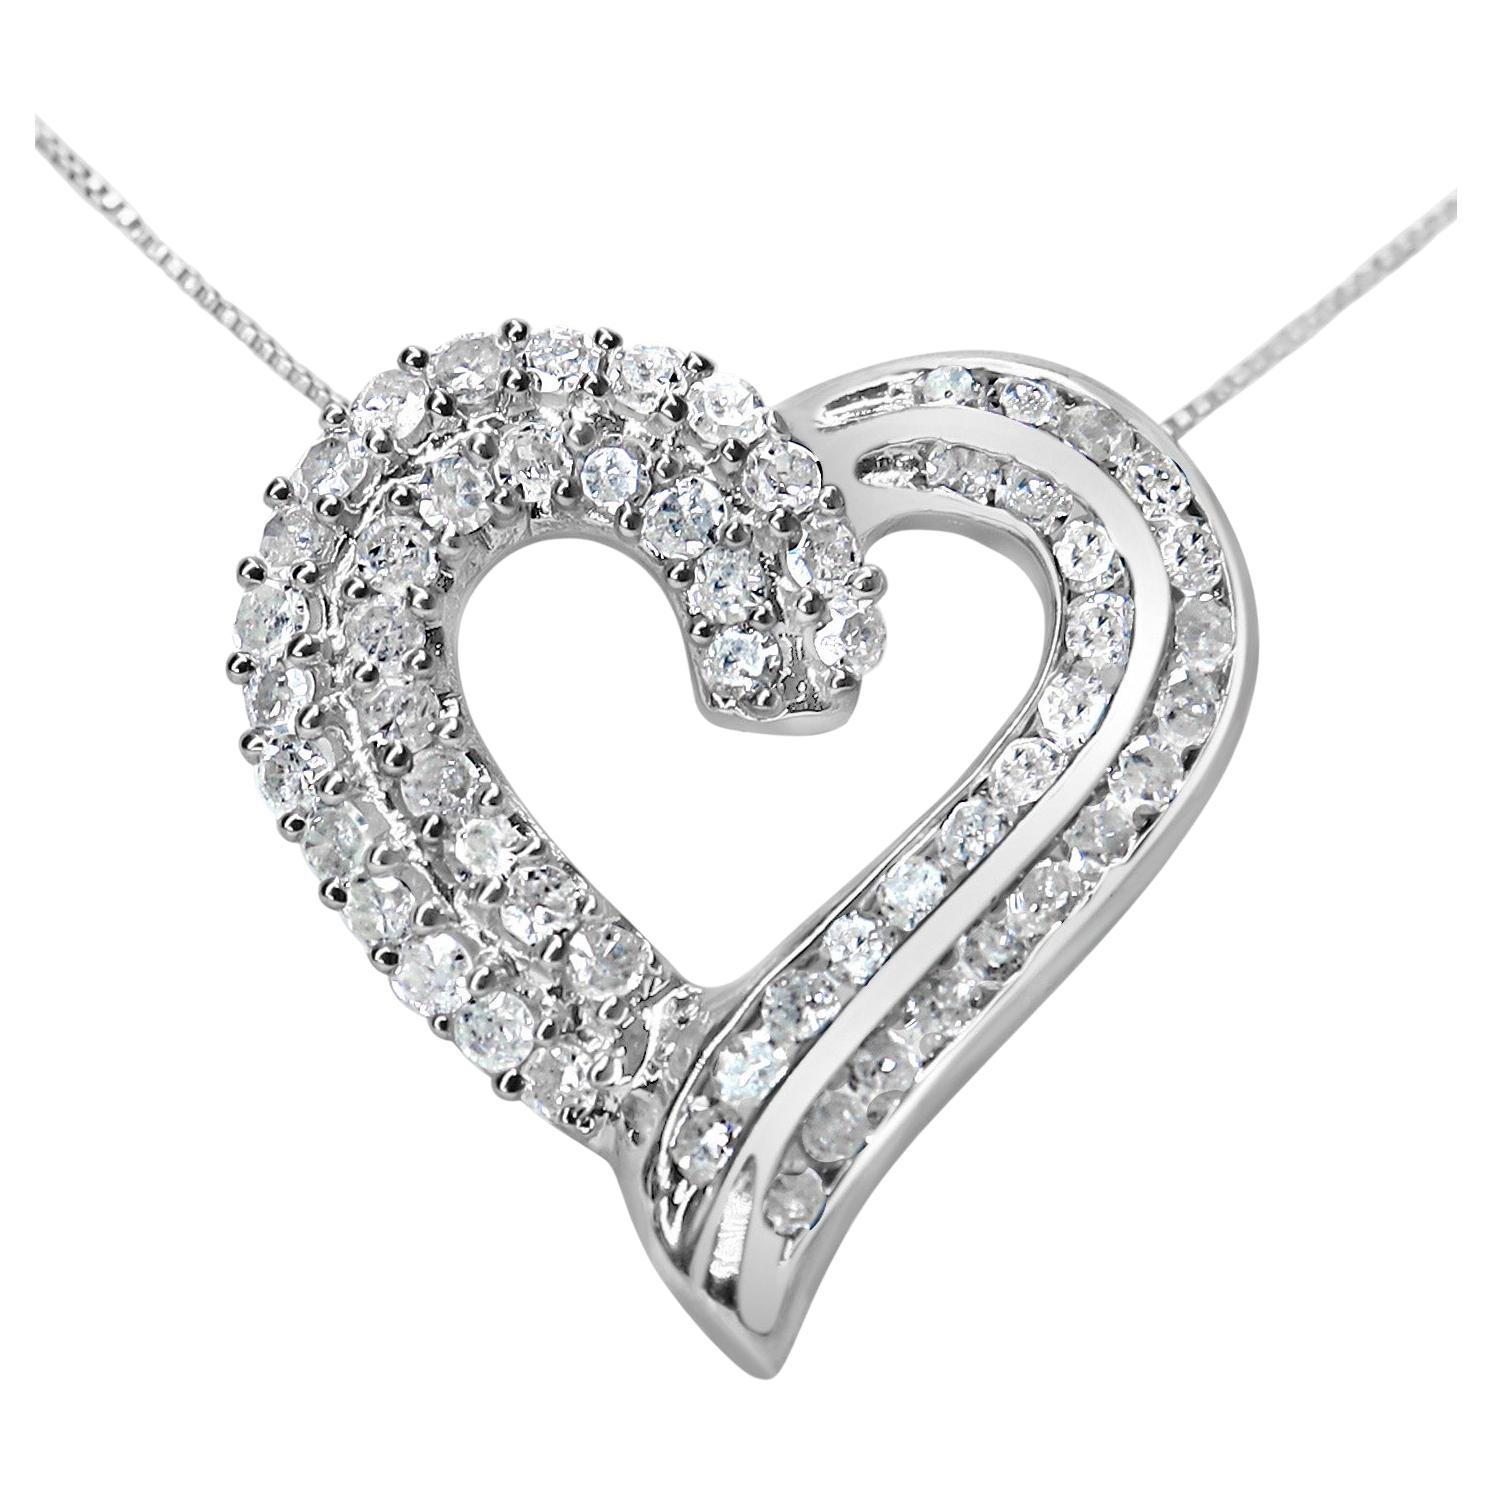 925 Sterlingsilber 1,0 Karat Diamant-Halskette mit durchbrochenem Band-Herz-Anhänger